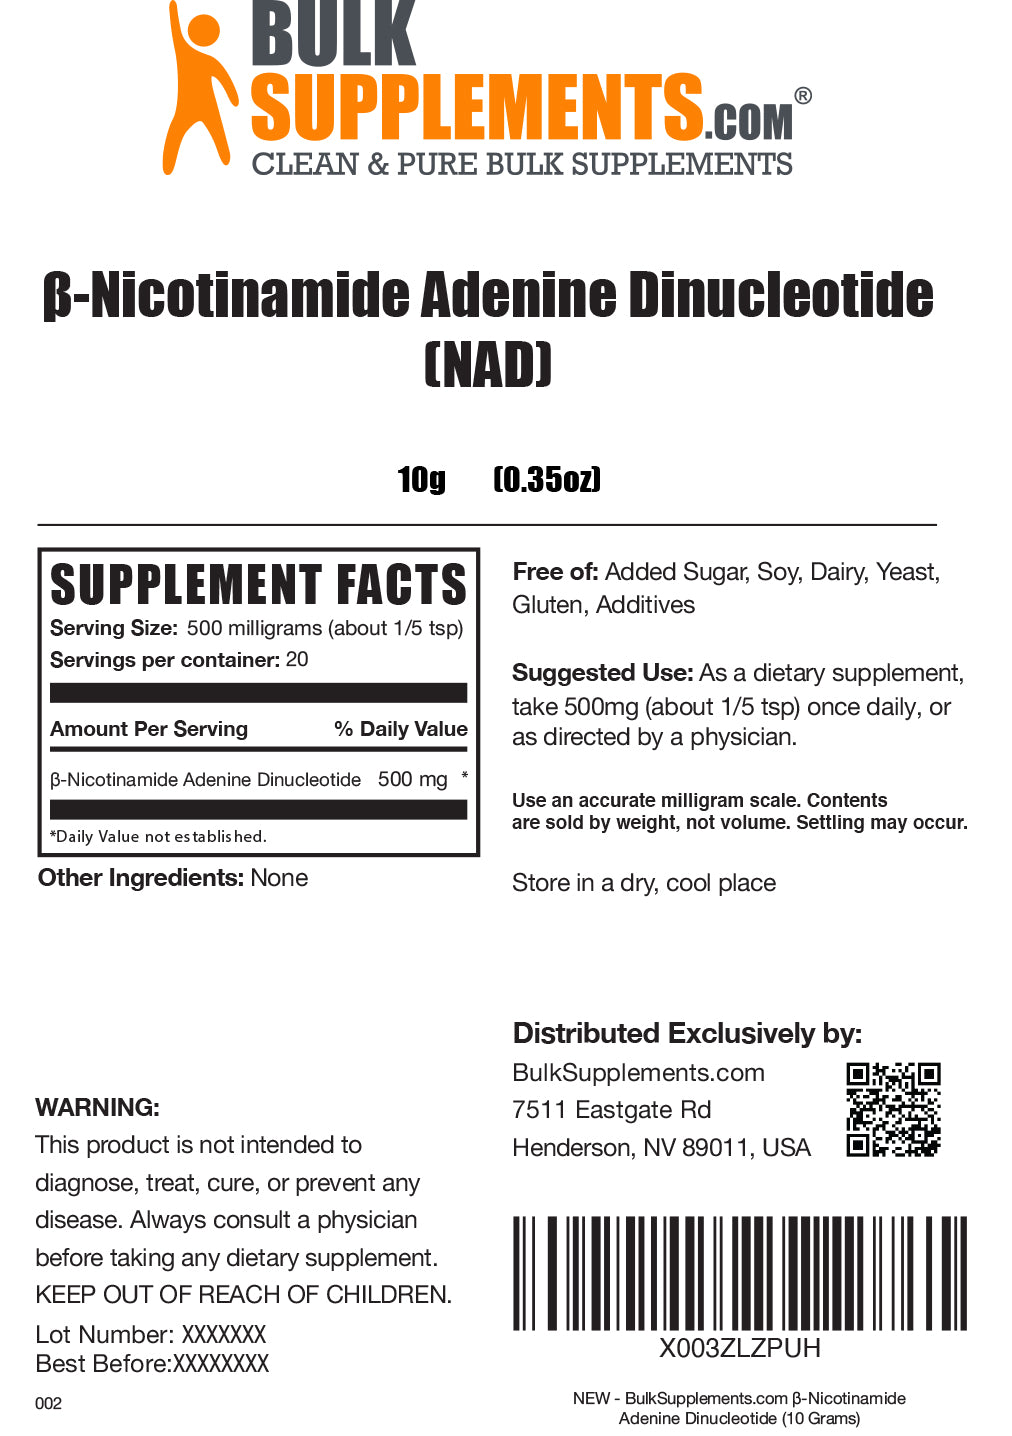 Nicotinamide Adenine Dinucleotide (NAD) powder label 10g